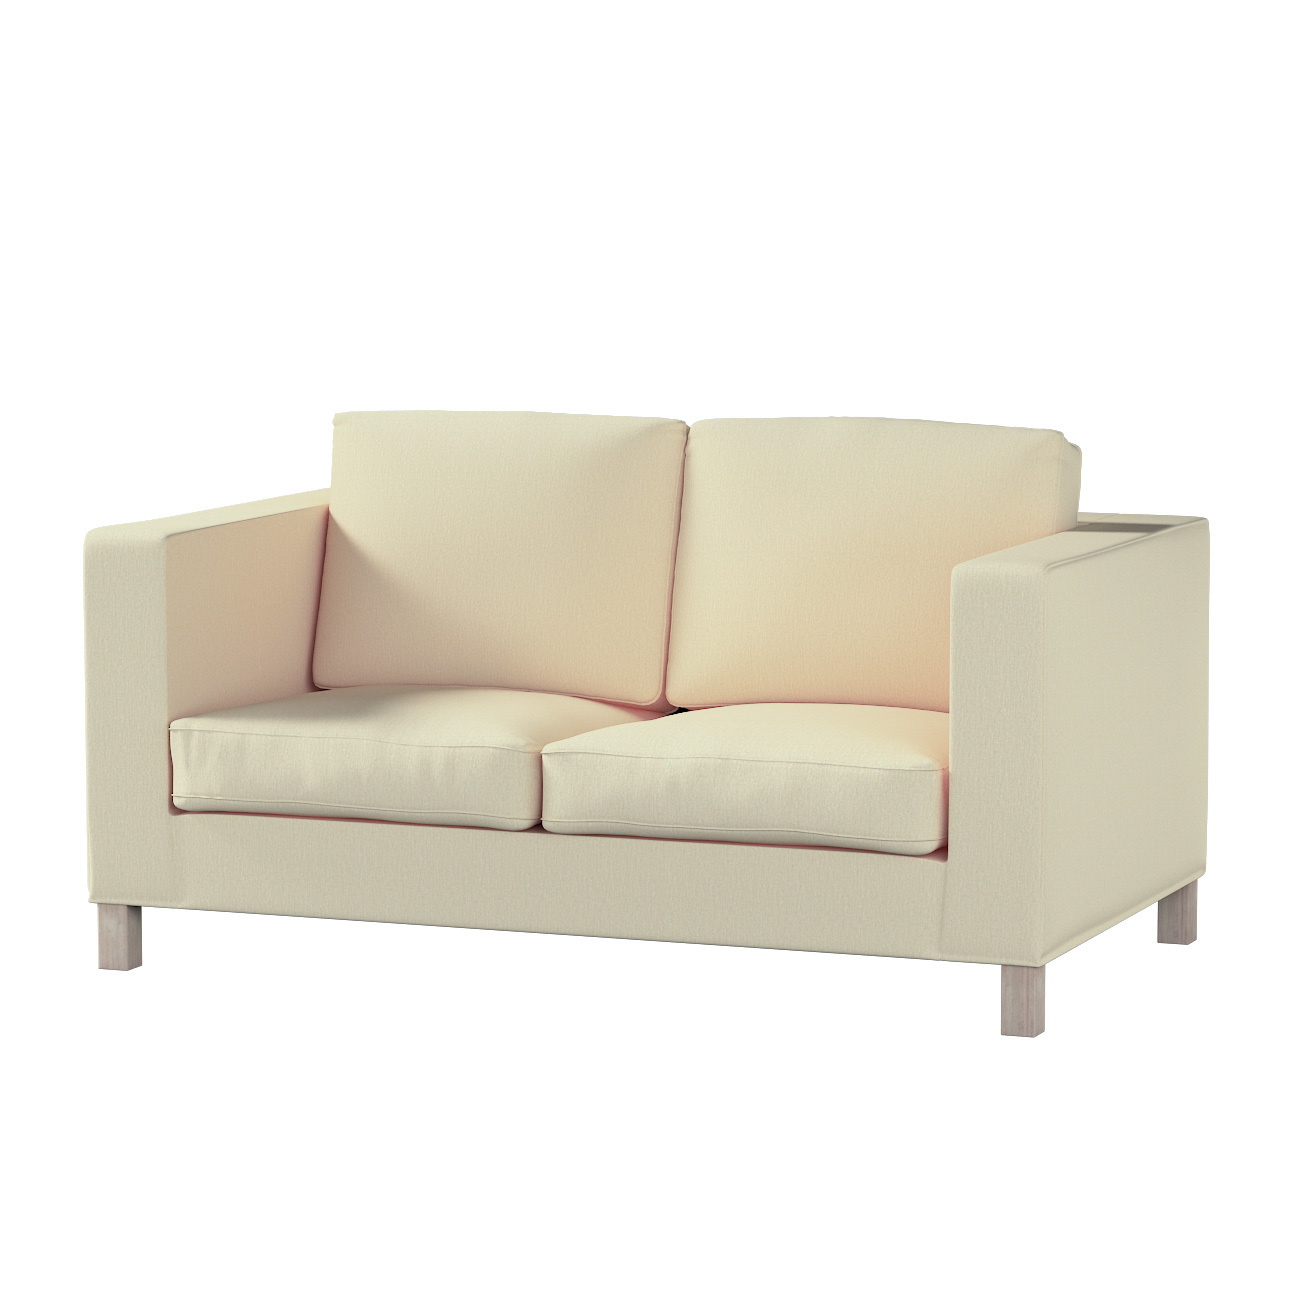 Bezug für Karlanda 2-Sitzer Sofa nicht ausklappbar, kurz, vanille, 60cm x 3 günstig online kaufen